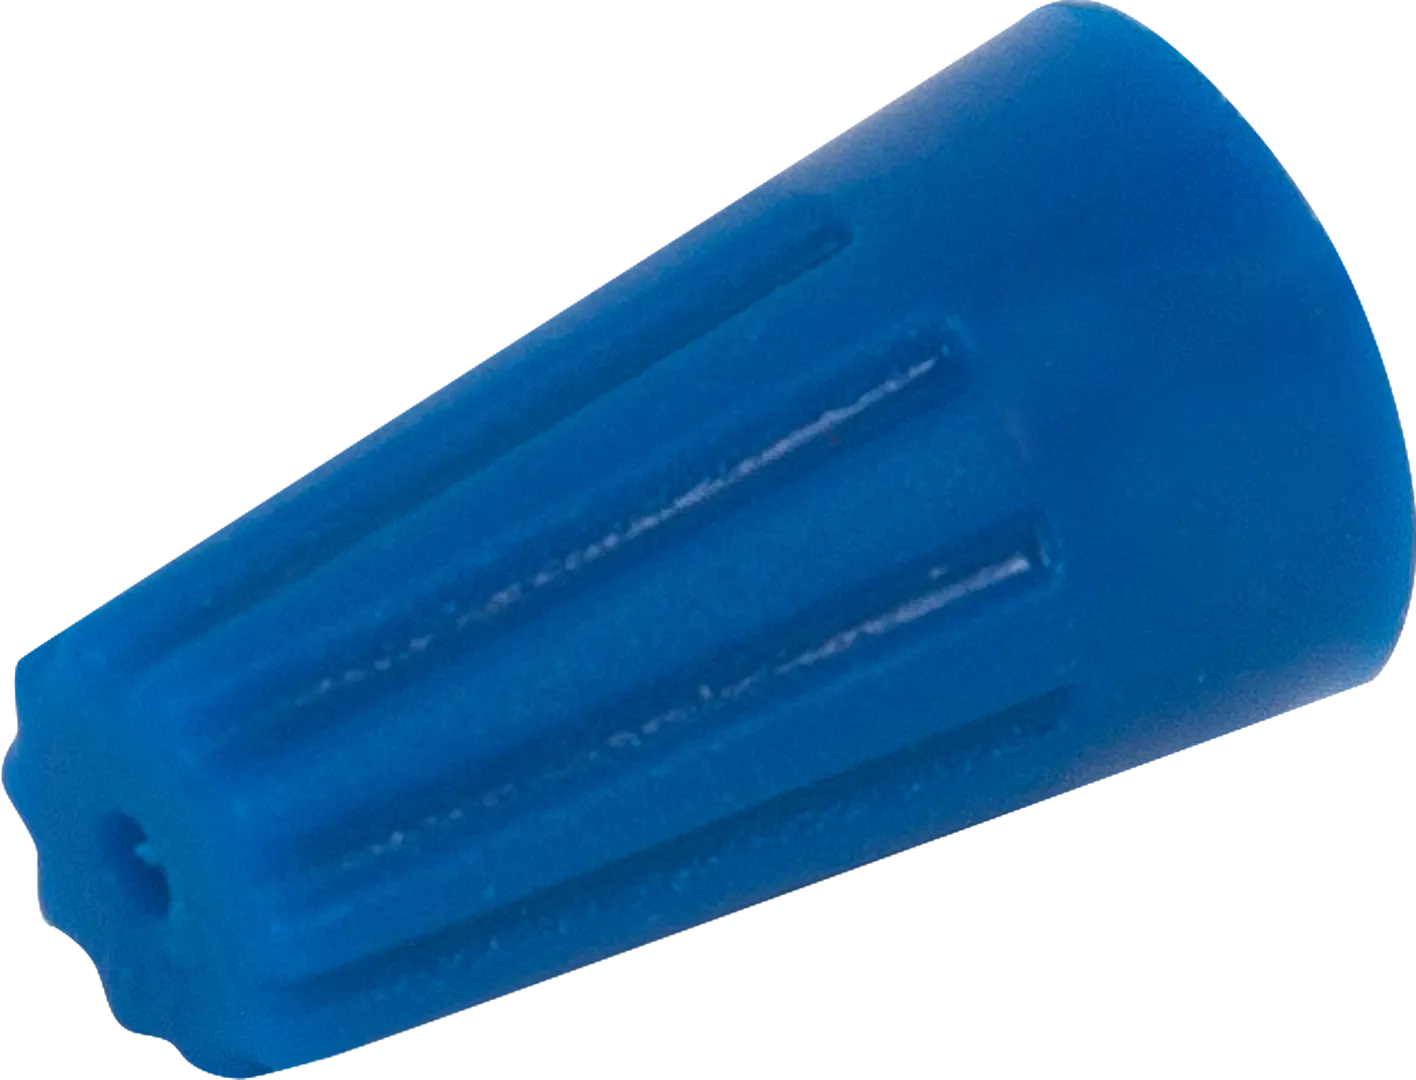 Соединительный изолирующий зажим Duwi СИЗ-2 2.5-4.5 мм цвет синий 10 шт. соединительный изолирующий зажим duwi сиз 2 2 5 4 5 мм цвет синий 10 шт